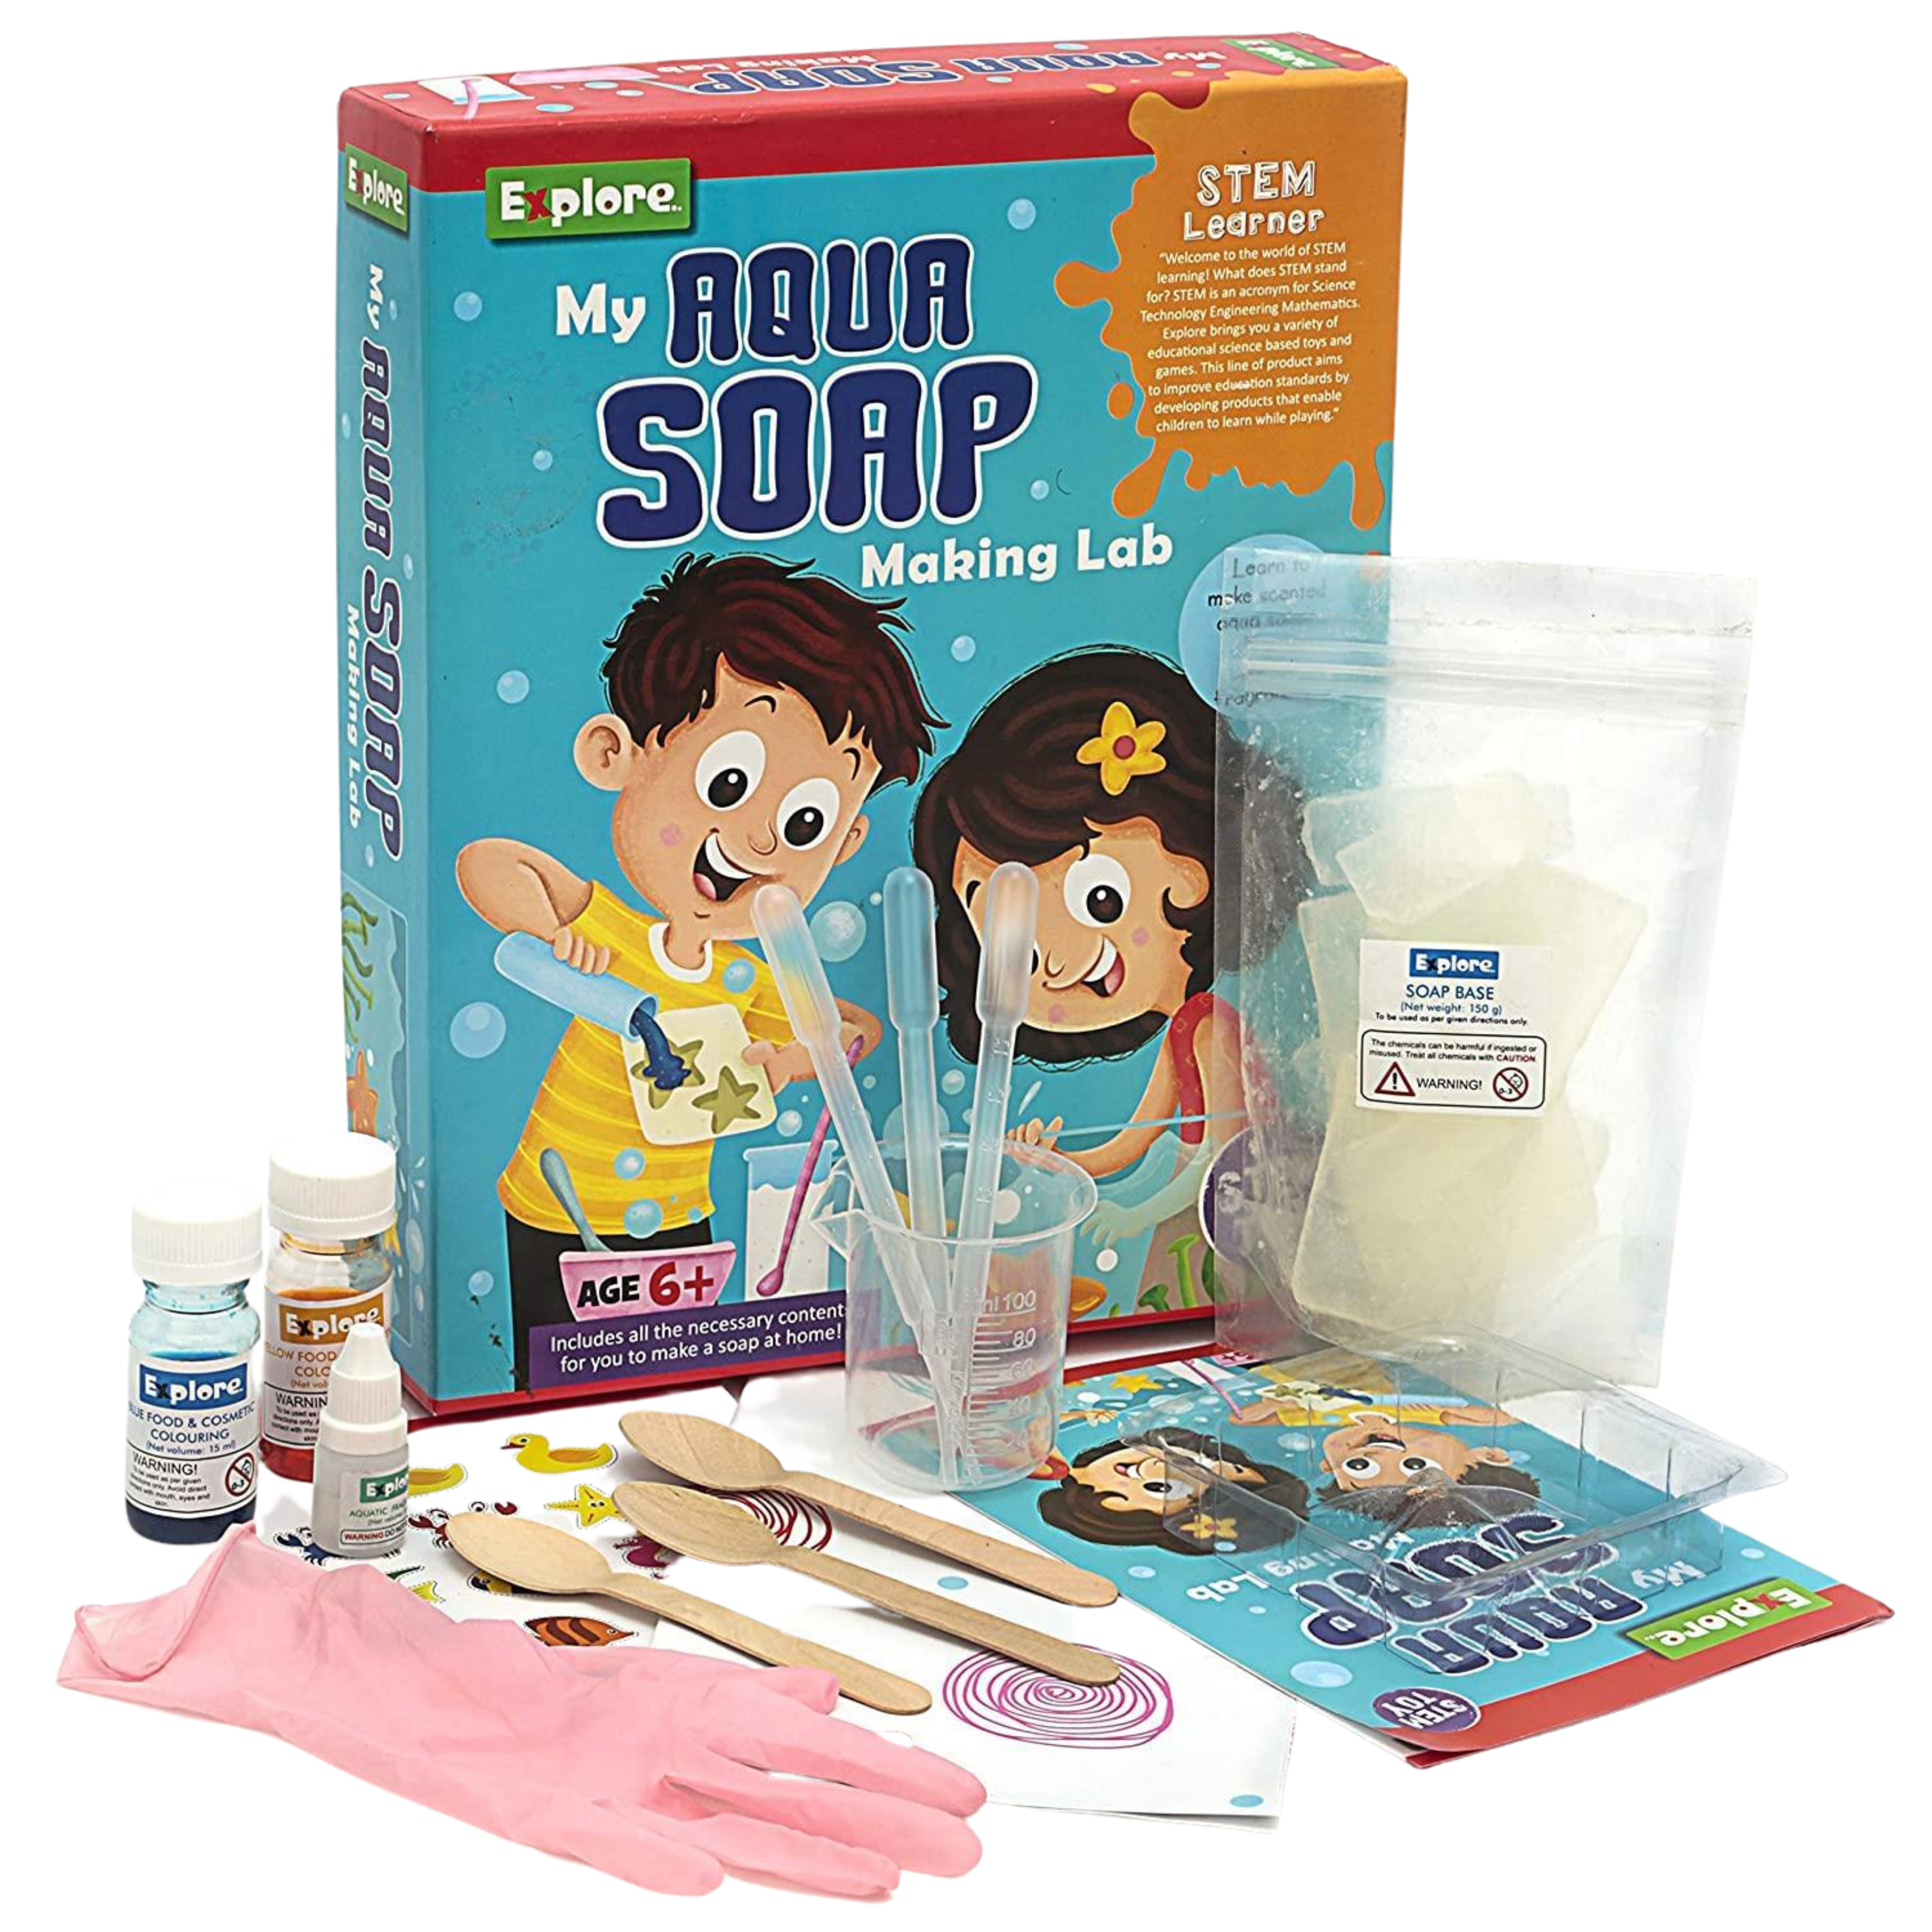 How to make Soap base at home, Soap base making at home, soap base